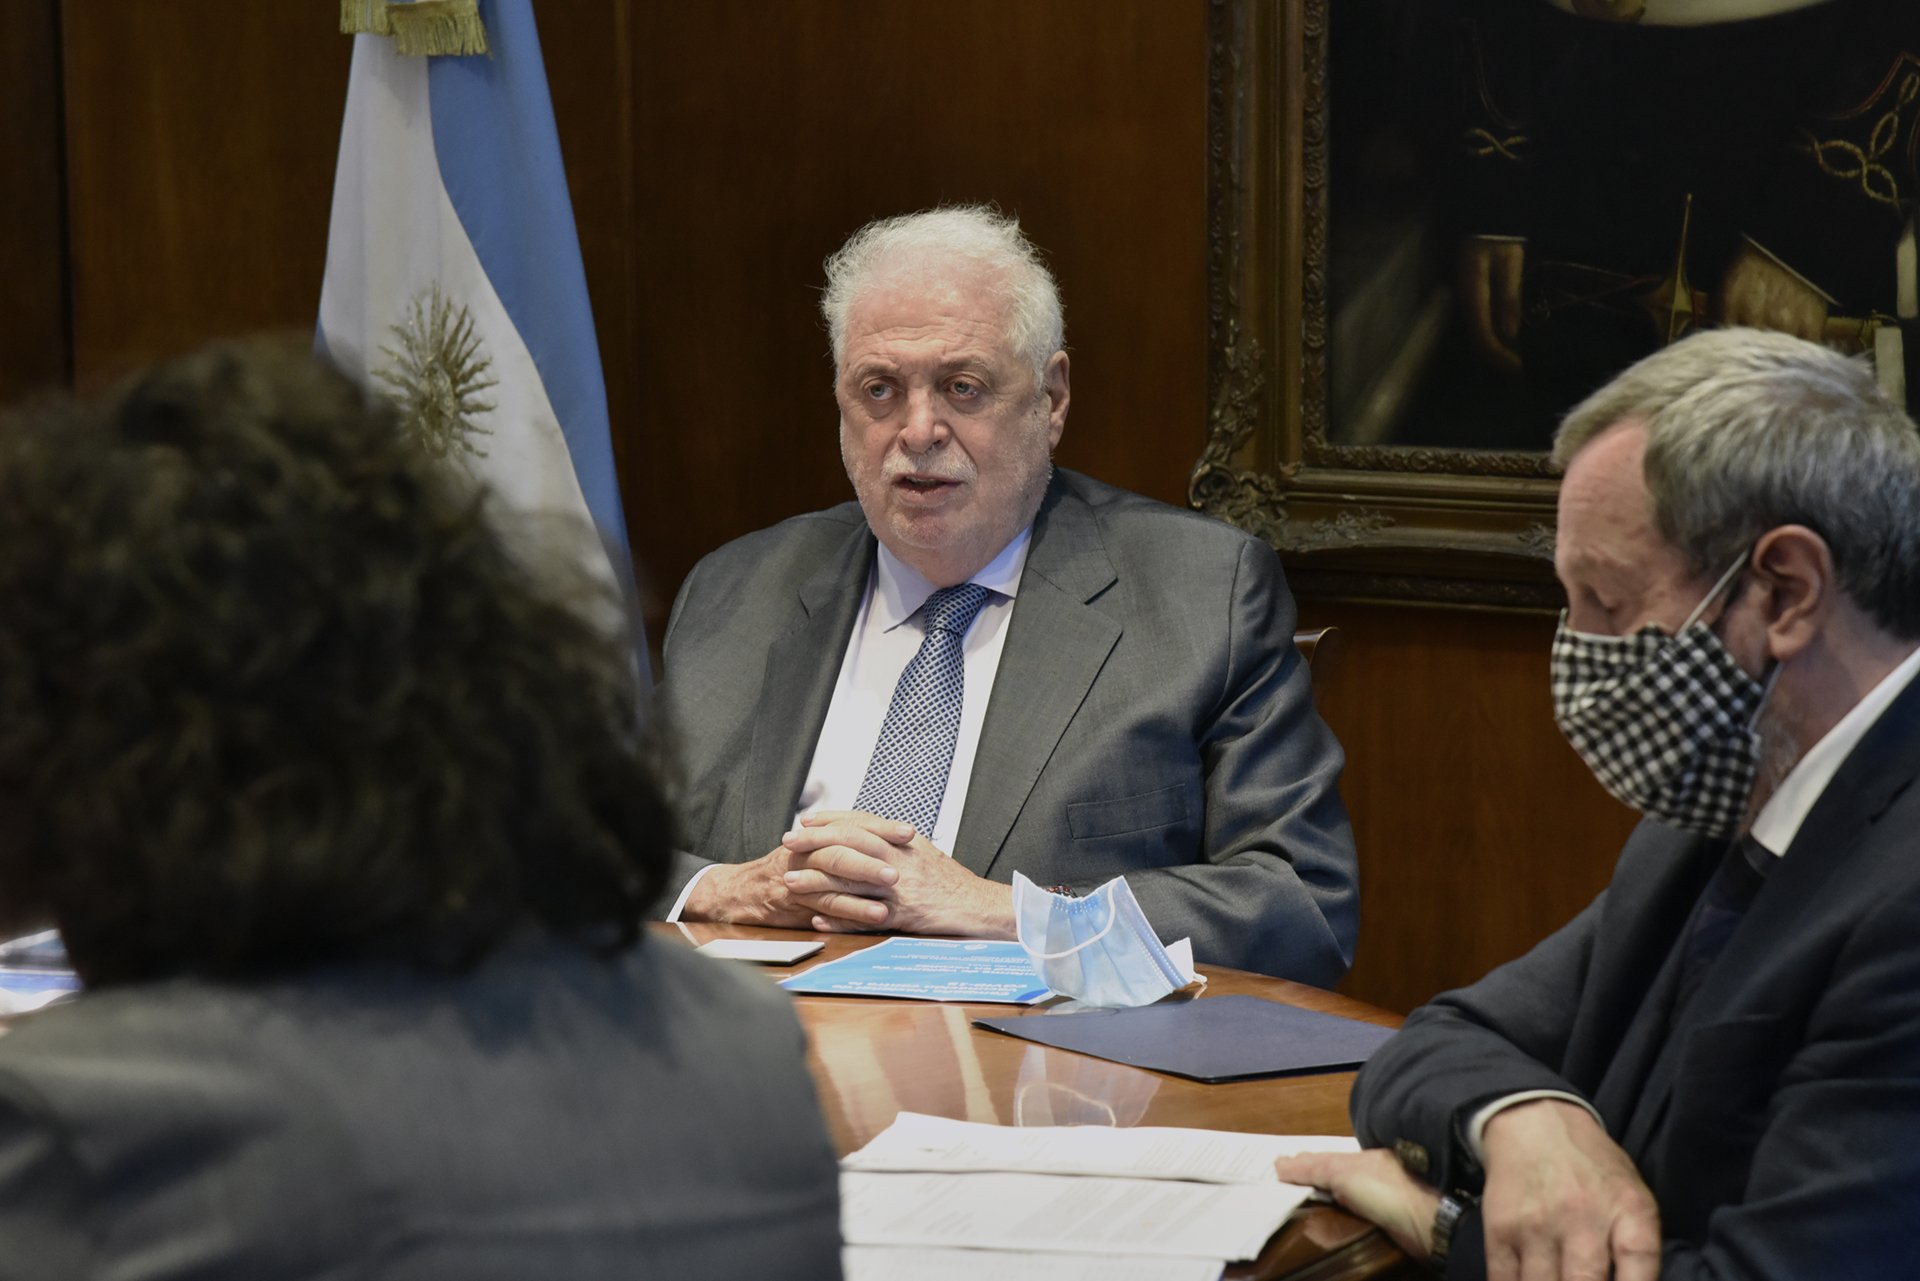 El ministro de Salud Ginés González García expuso ante la comisión de Salud de la Cámara de Diputados. Foto Télam.